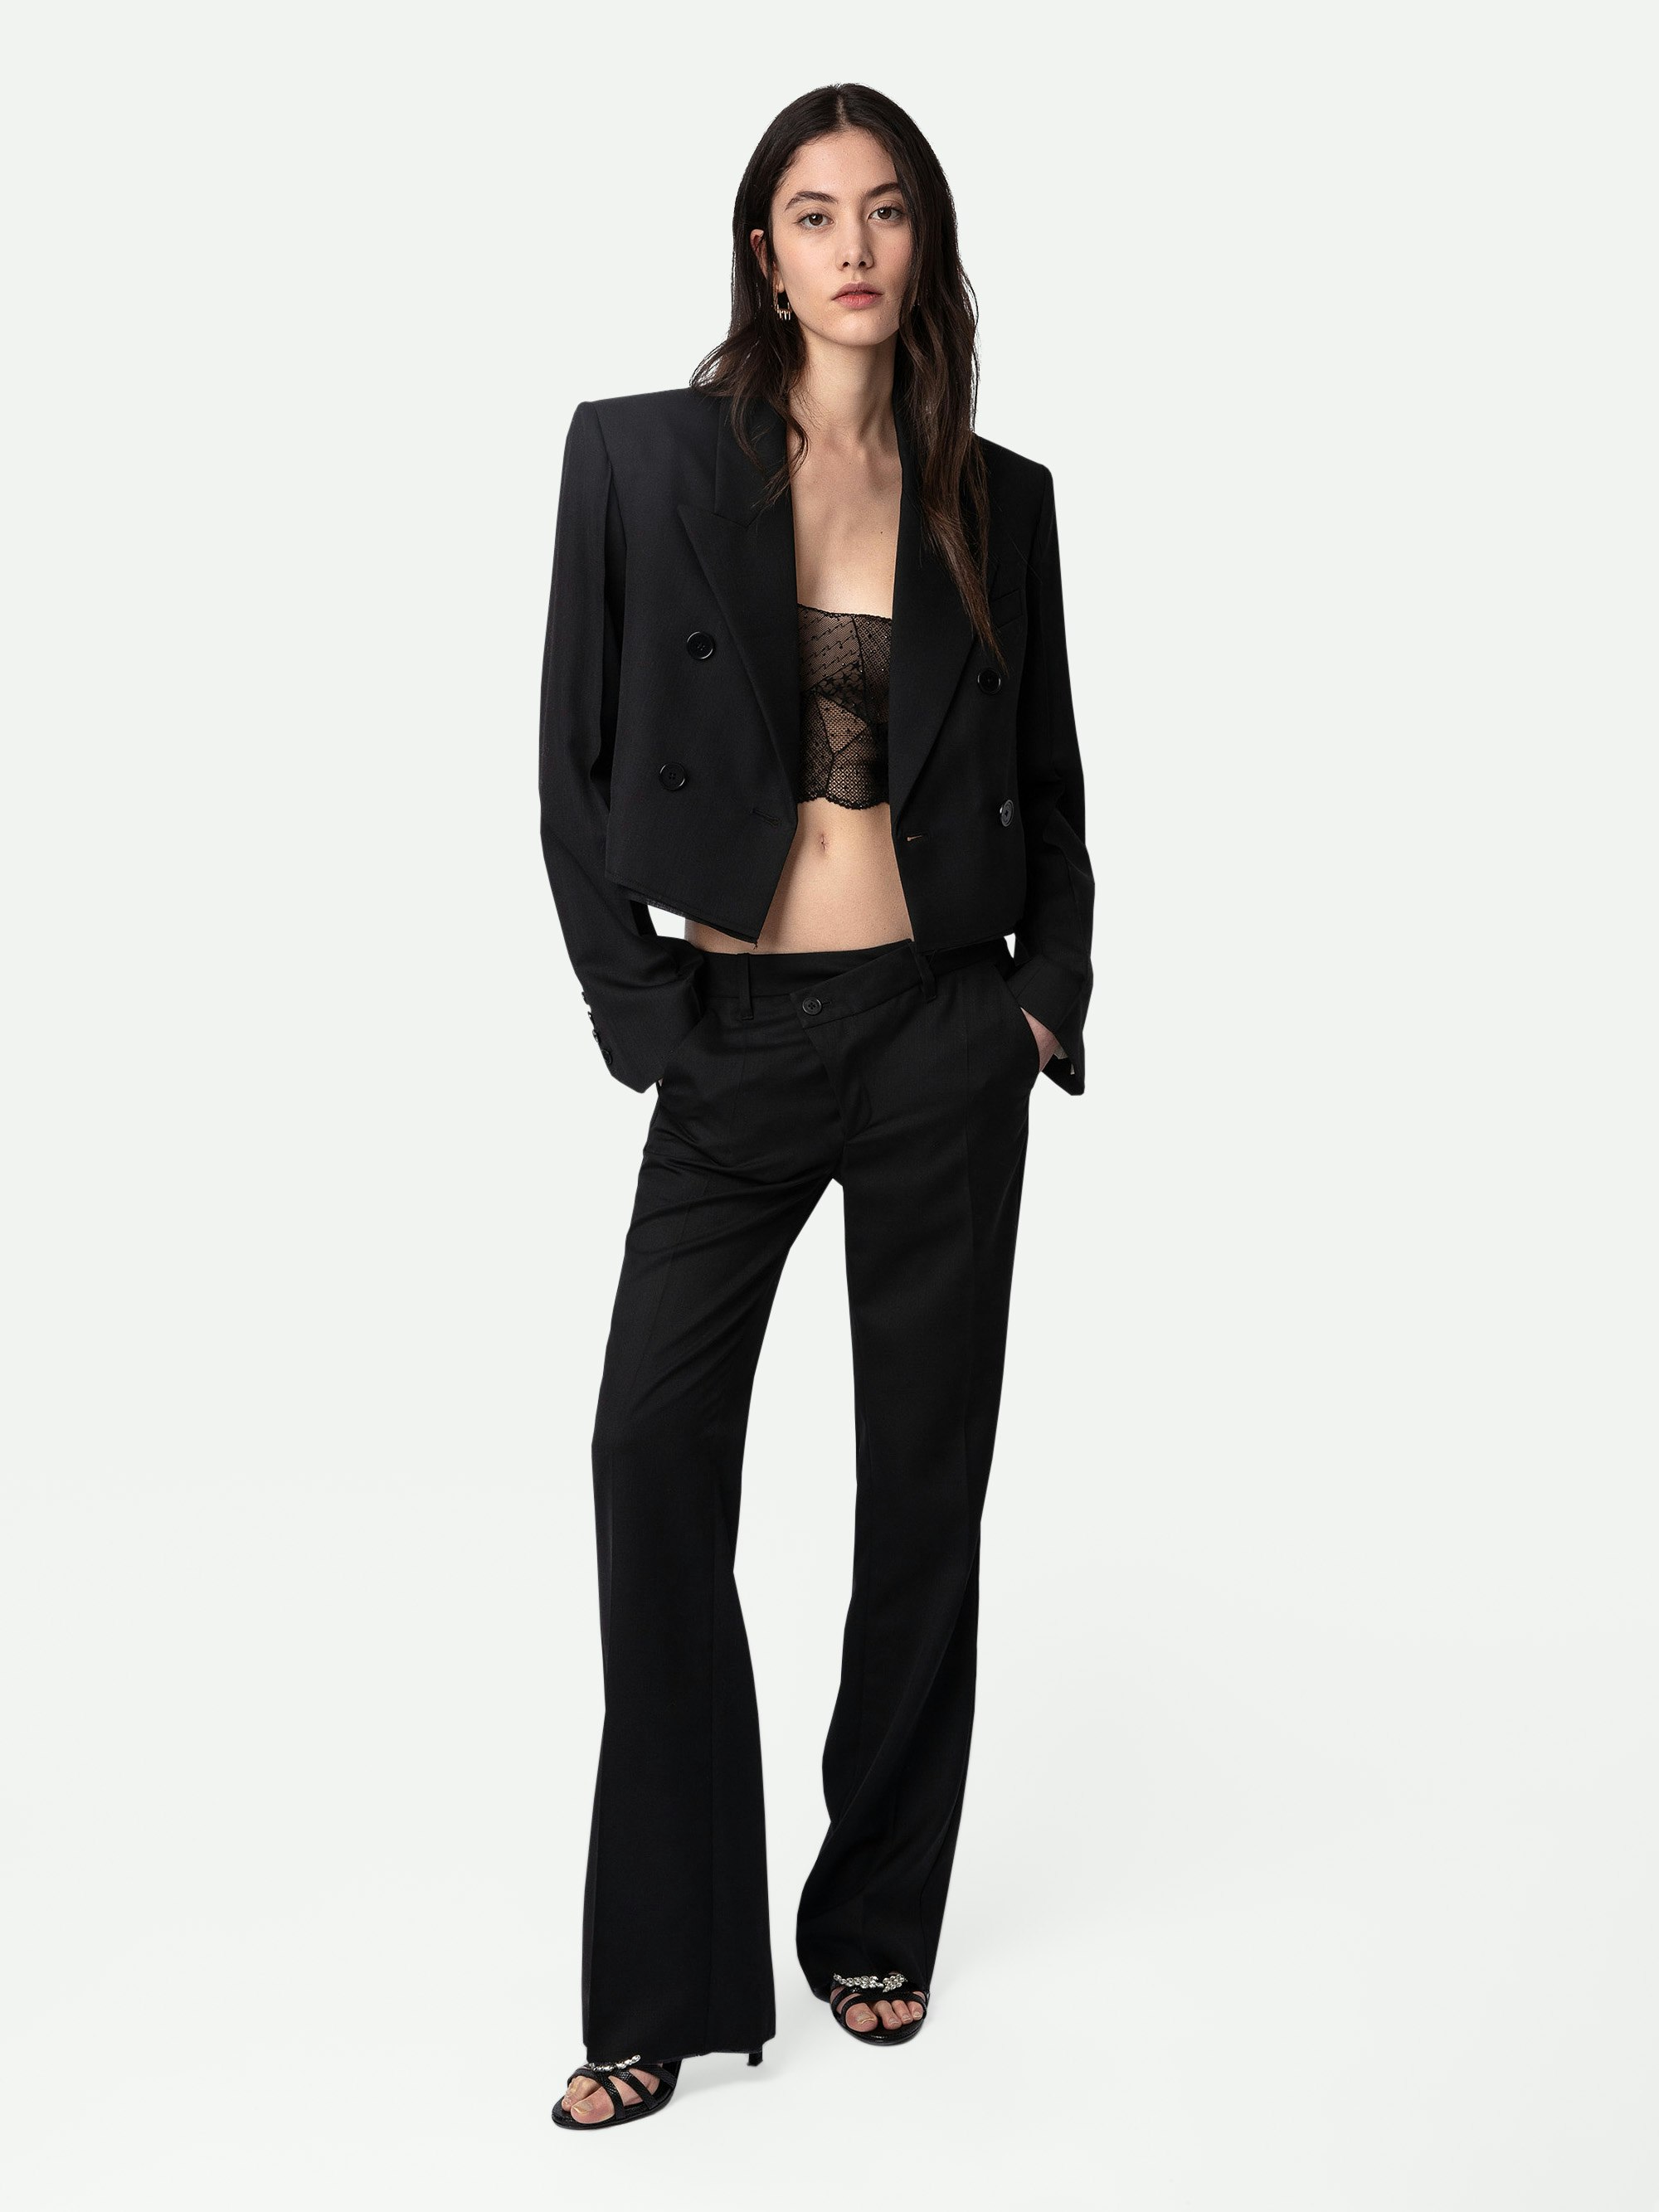 Pantalón Poxy - Pantalón de traje negro ancho de lana fría con cierre asimétrico y detalles sin rematar.